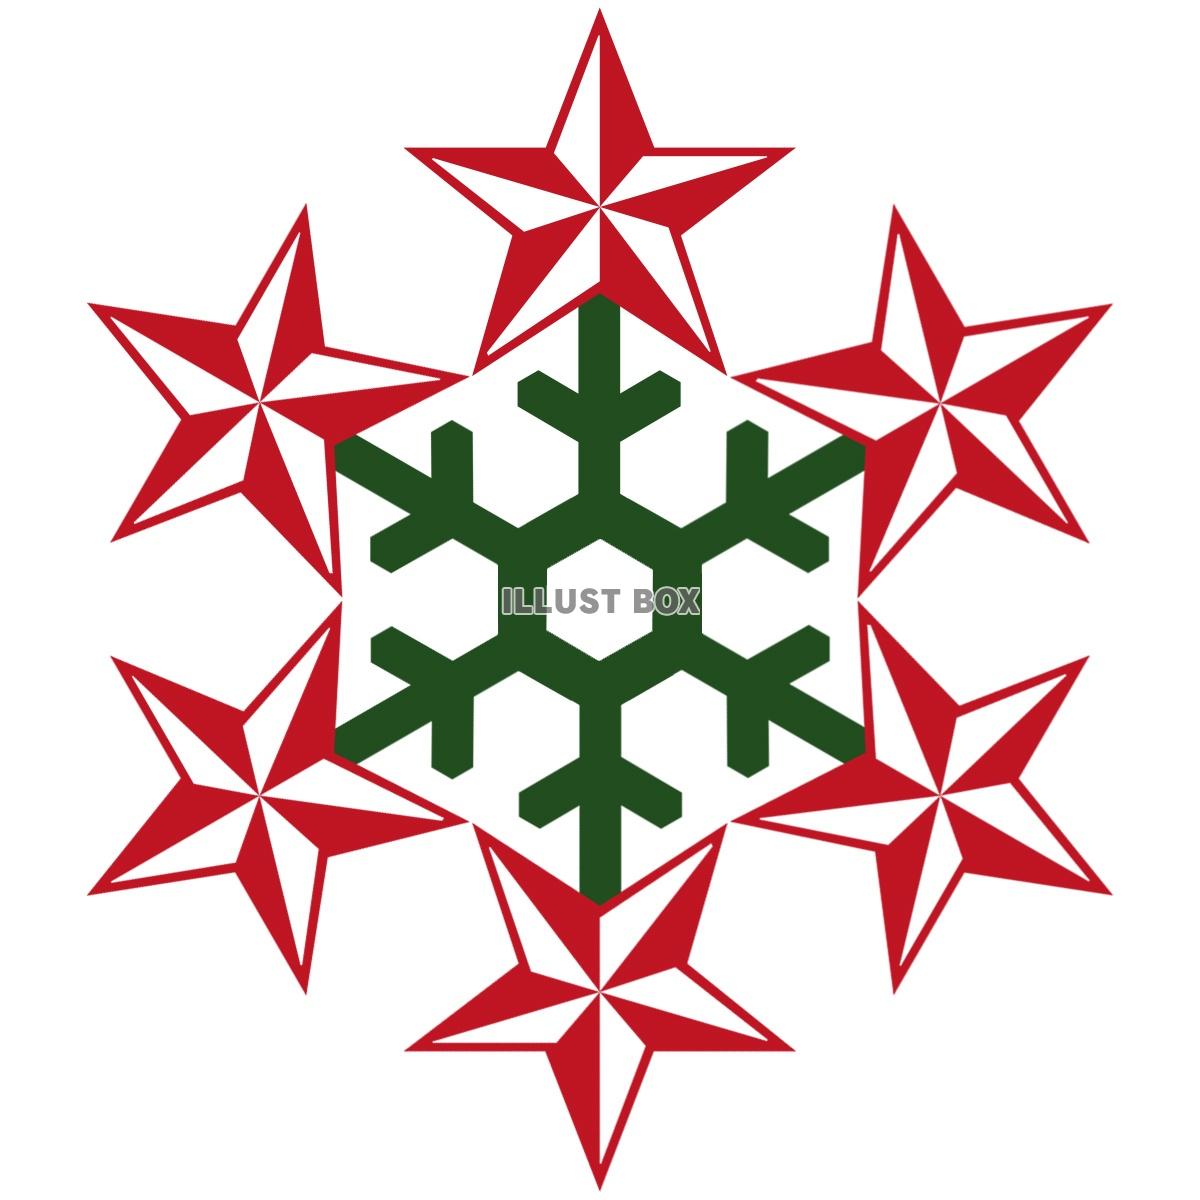 お星さまの雪の結晶シンプル装飾アイコン素材